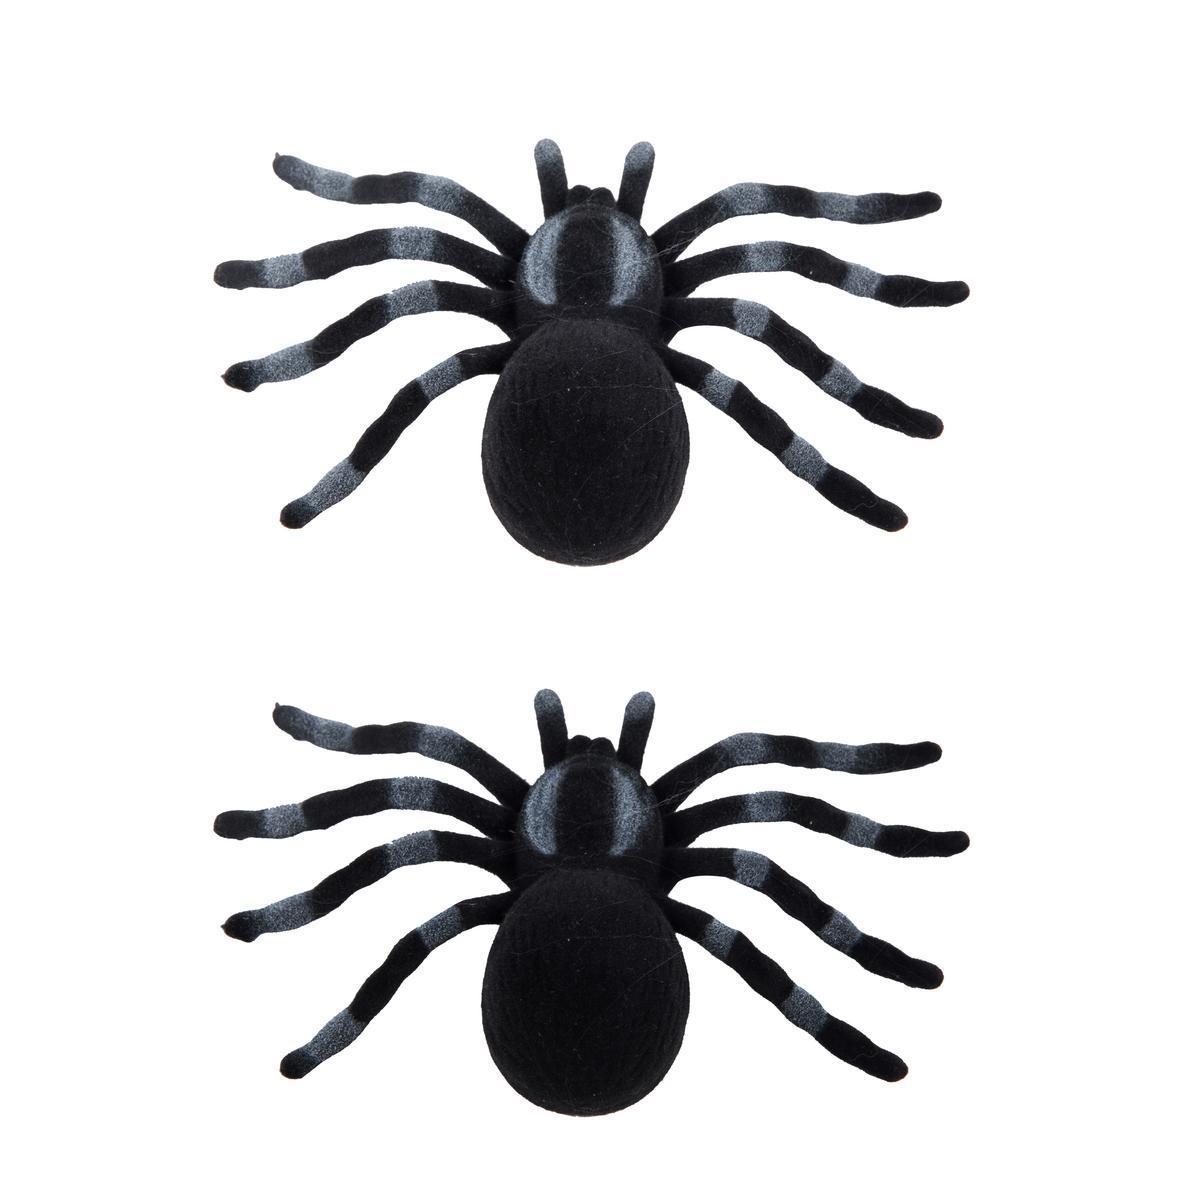 2 araignées effet velours - 19 x 14.5 x 3.5 cm - Différents modèles - Marron, noir